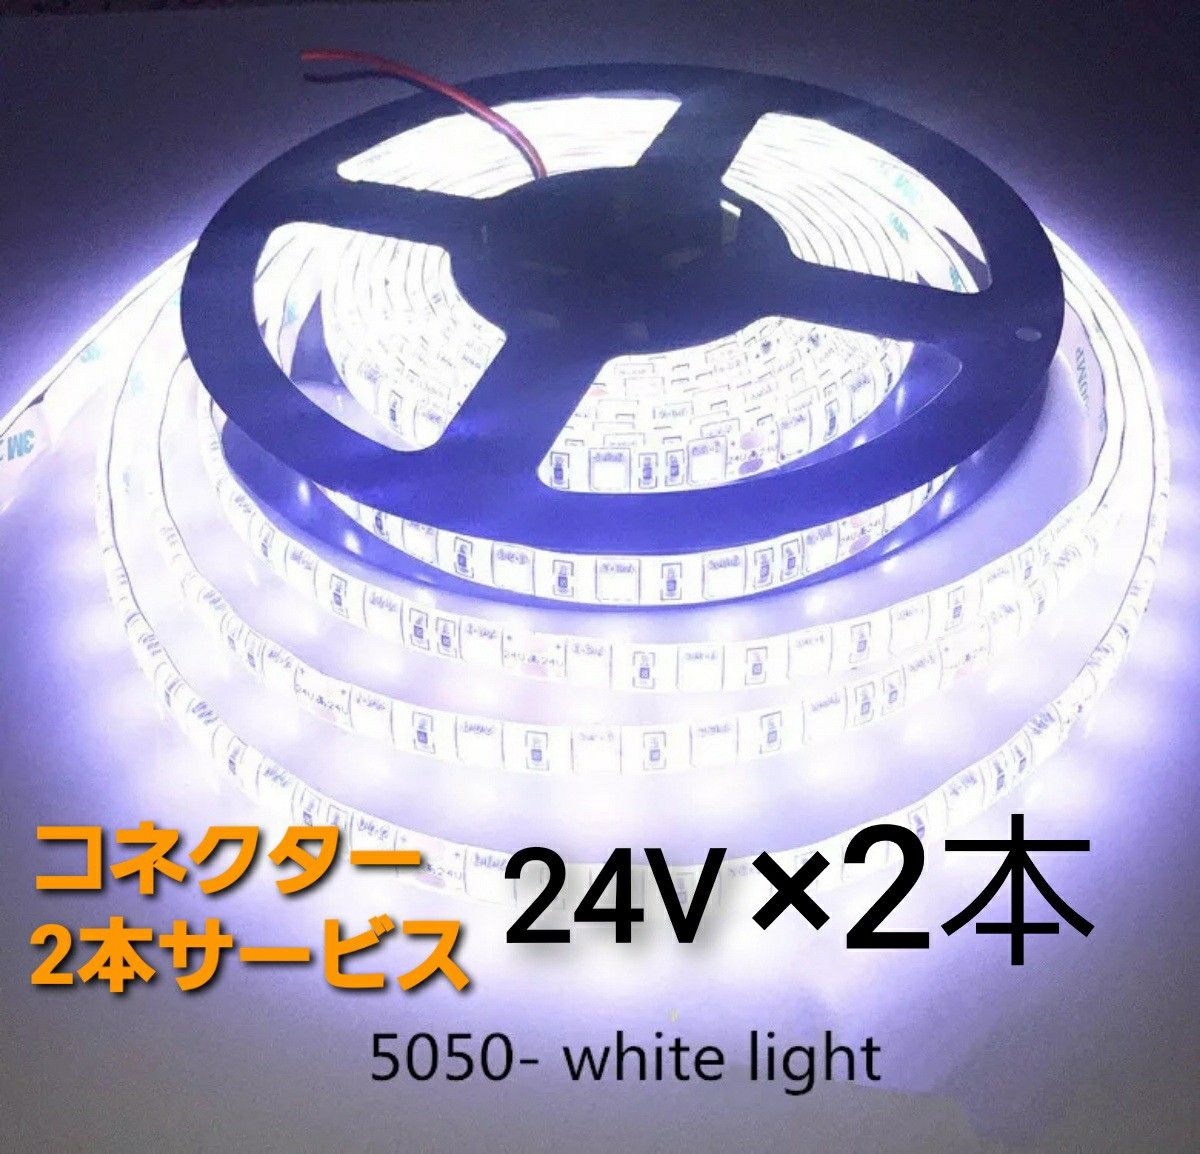 スーパーブライト 正規品 24V LED テープライト 防水 5m× 2本 ホワイト ワンタッチコネクター 2本付き トラック用品